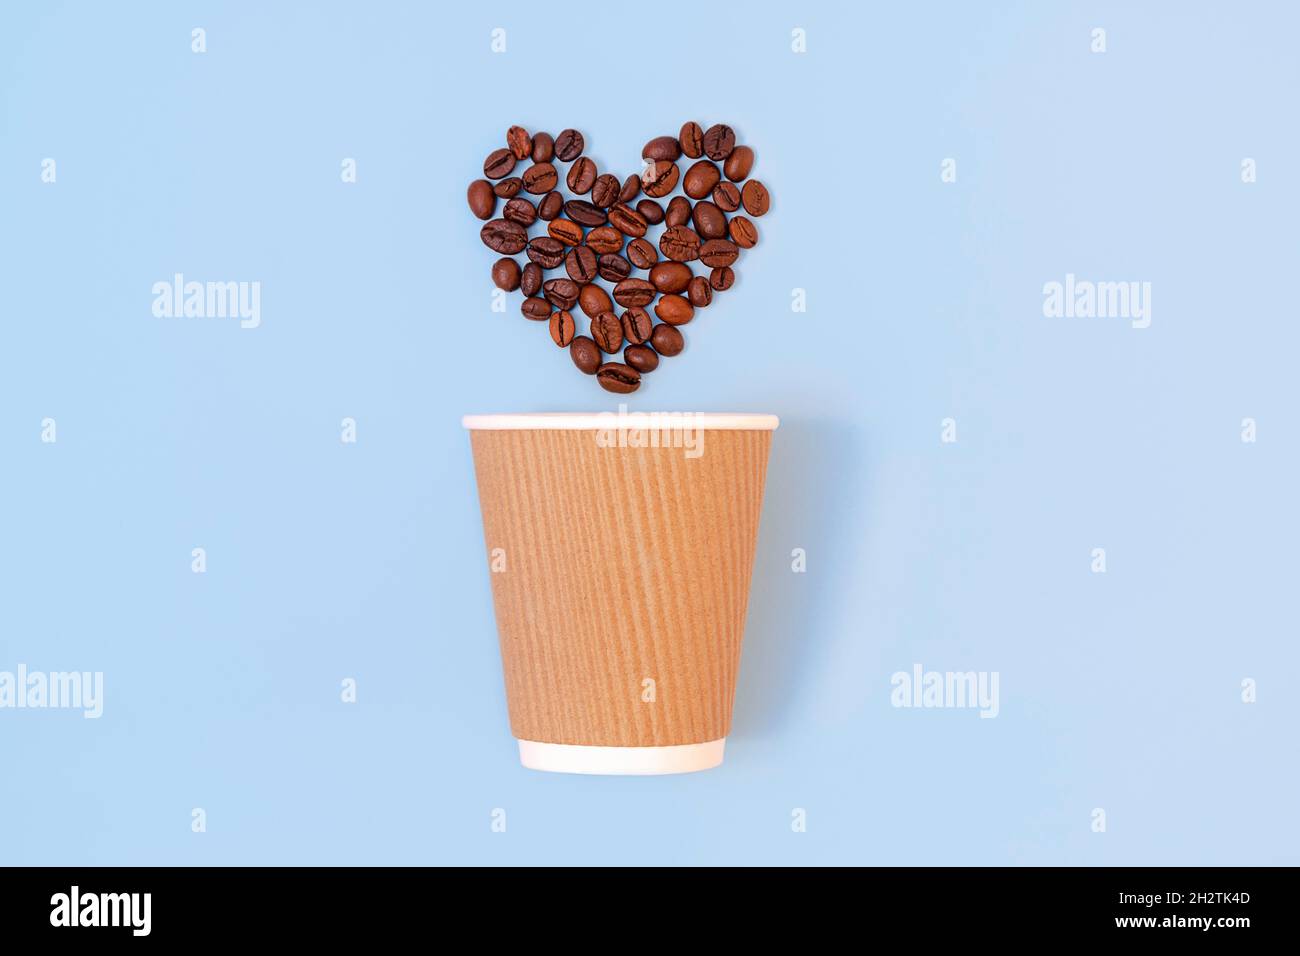 Kreative flache Lay mit Papier Einweg-Kaffeetasse und gerösteten Kaffeebohnen in Form eines Herzens auf pastellblauem Hintergrund. Umweltfreundliches und abfallfreundliches Konzept Stockfoto